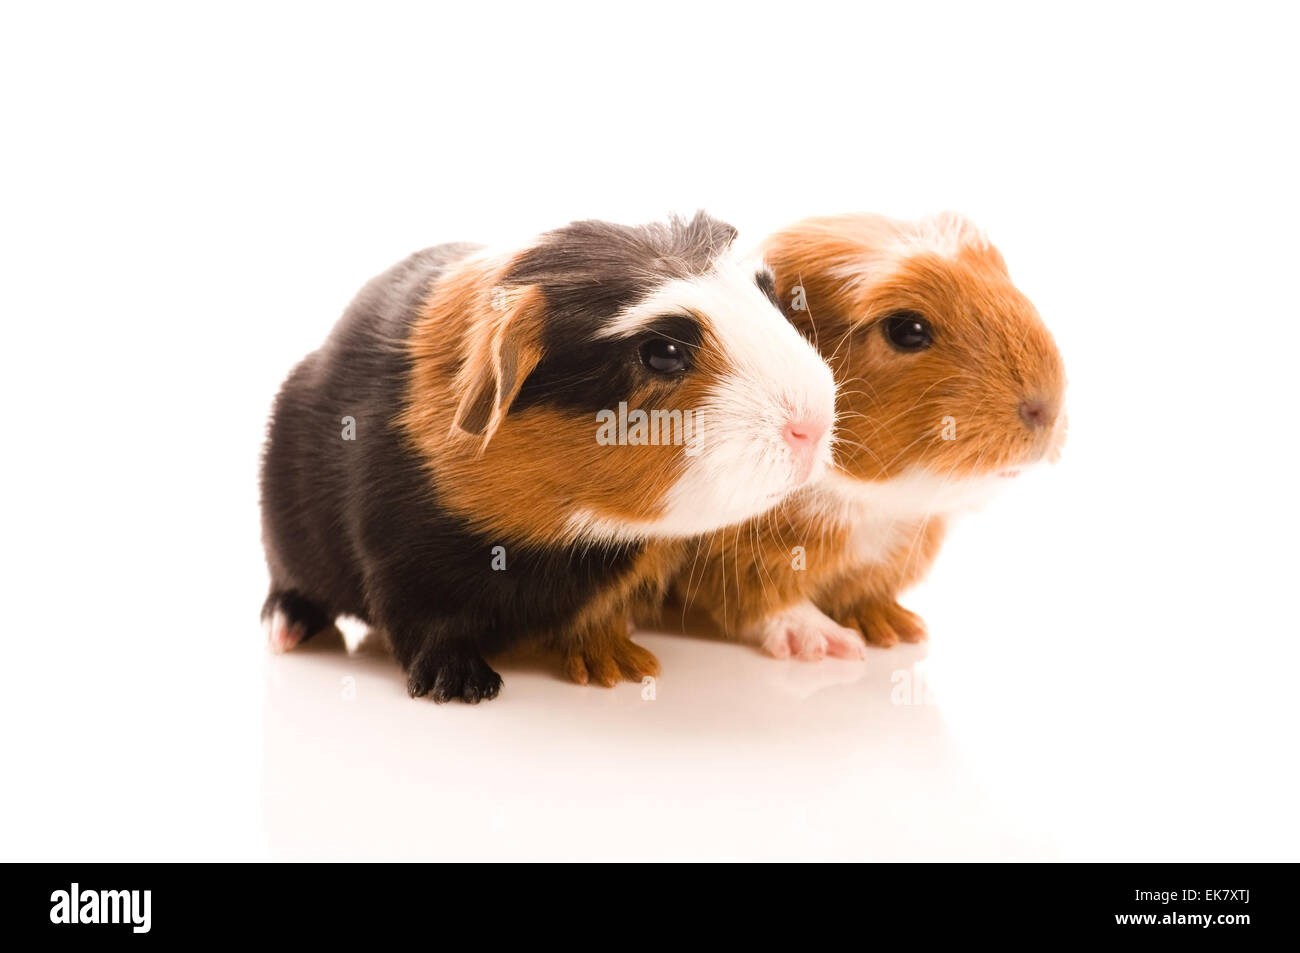 baby guinea pigs Stock Photo